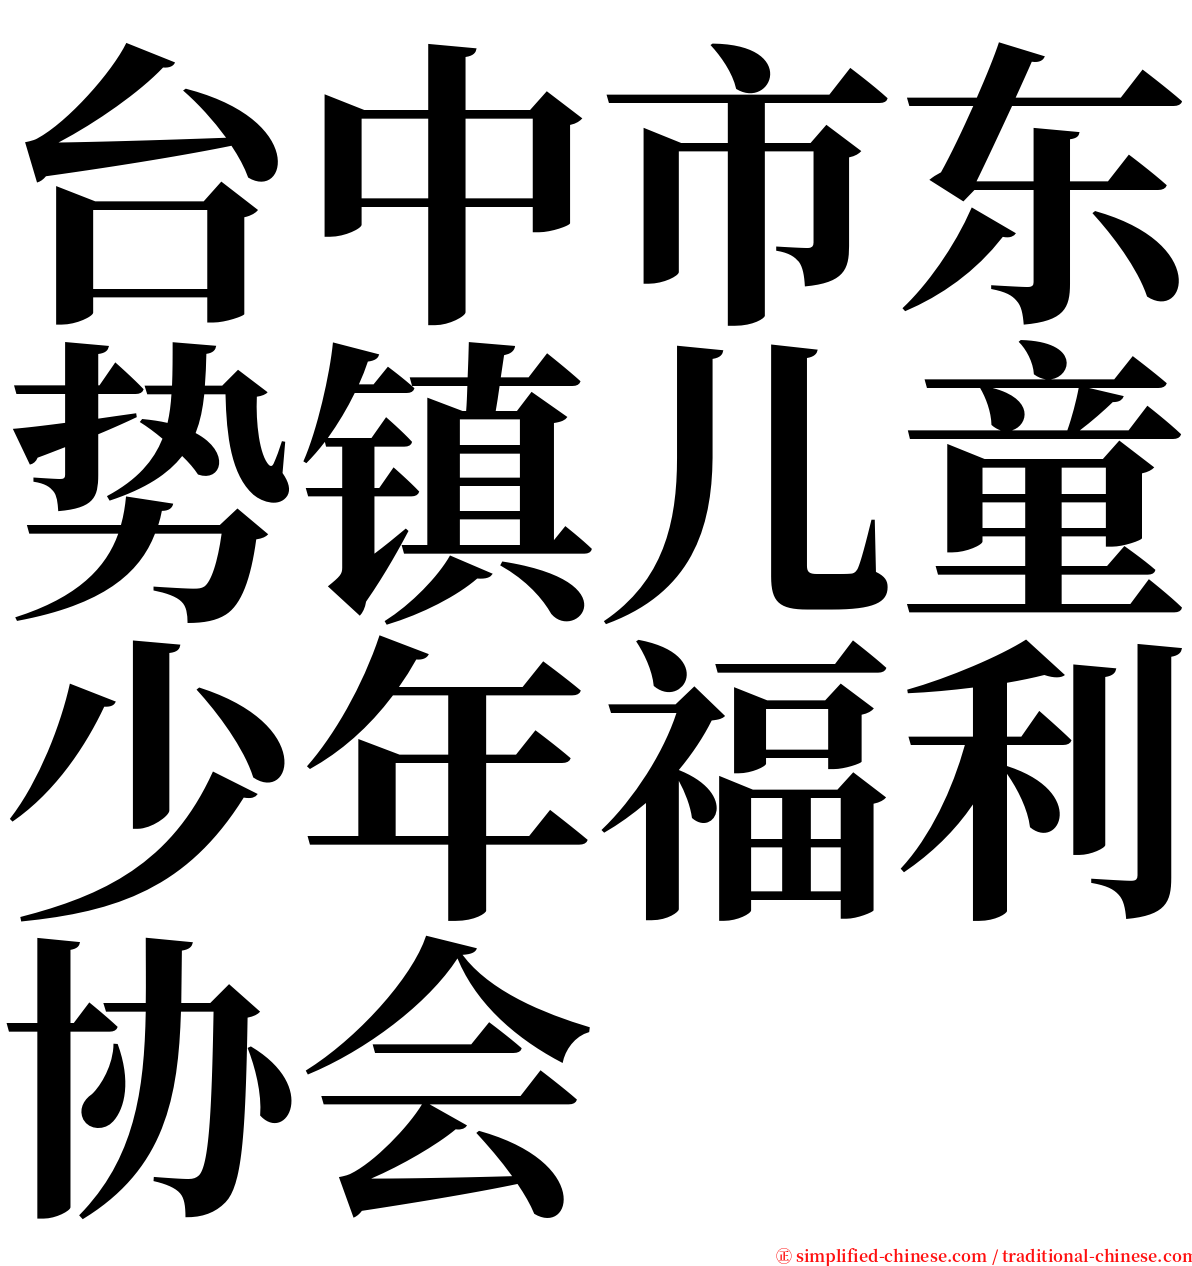 台中市东势镇儿童少年福利协会 serif font